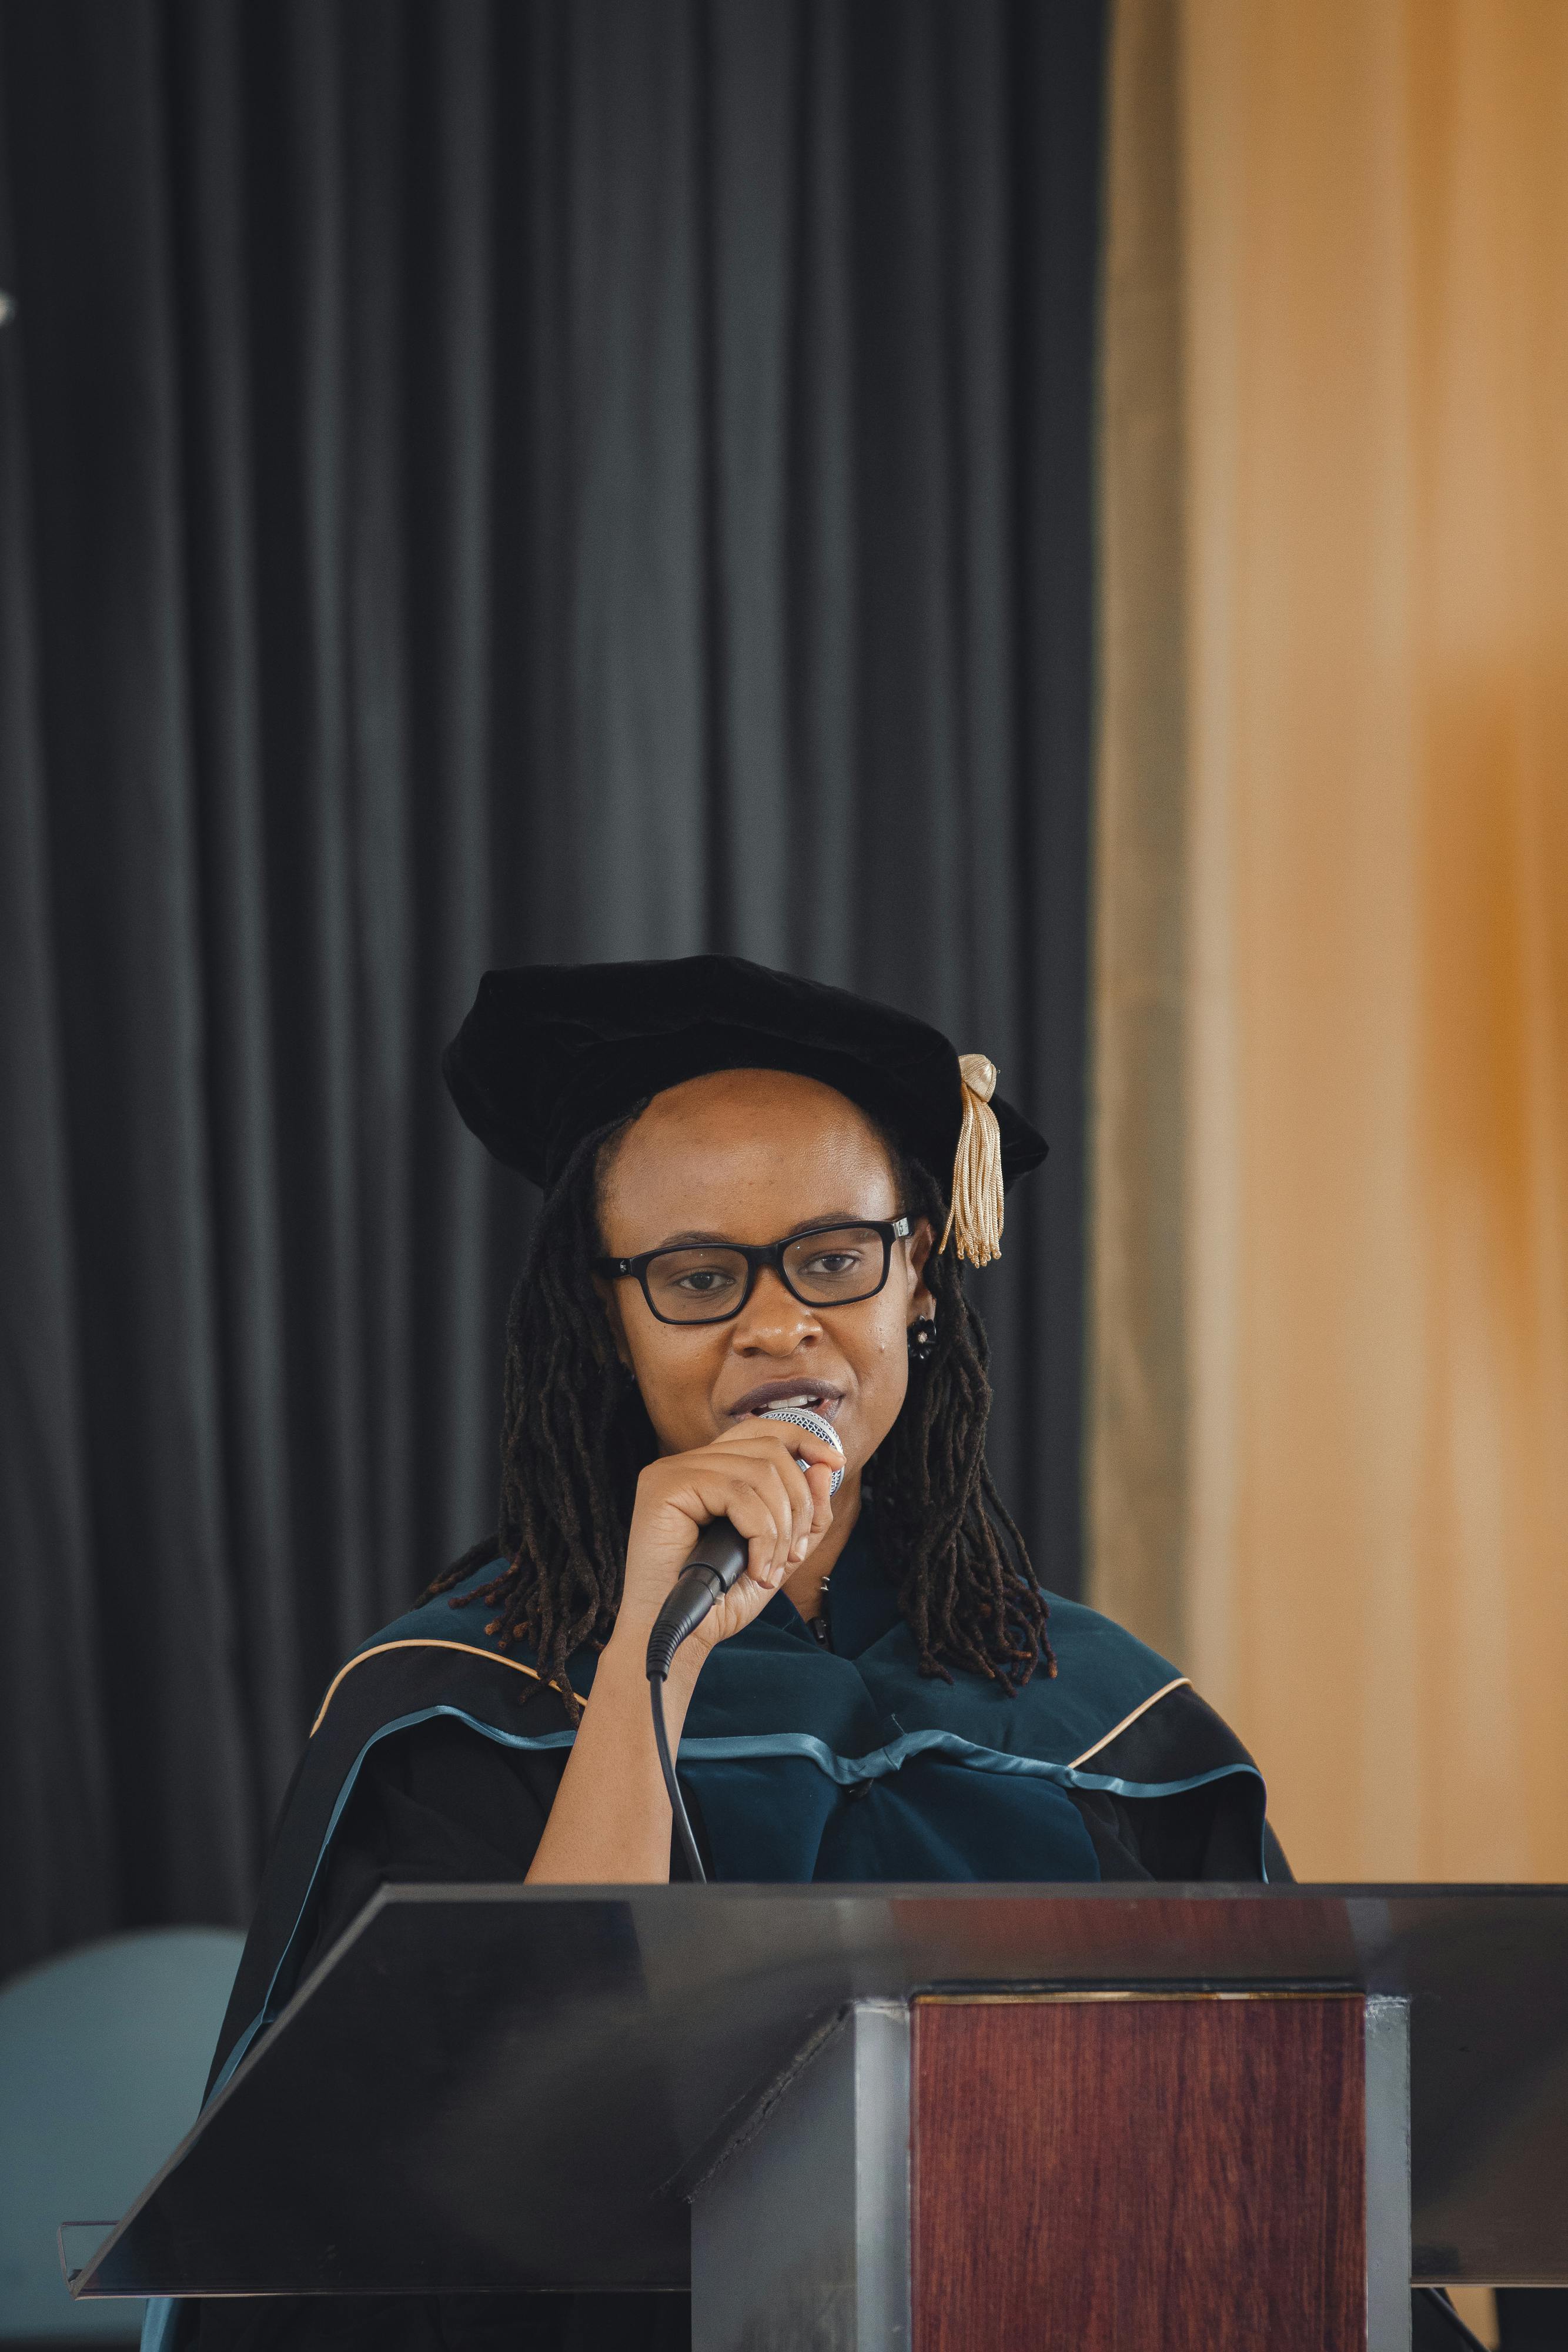 Un diplômé de l'enseignement supérieur s'exprimant au micro sur scène | Source : Pexels